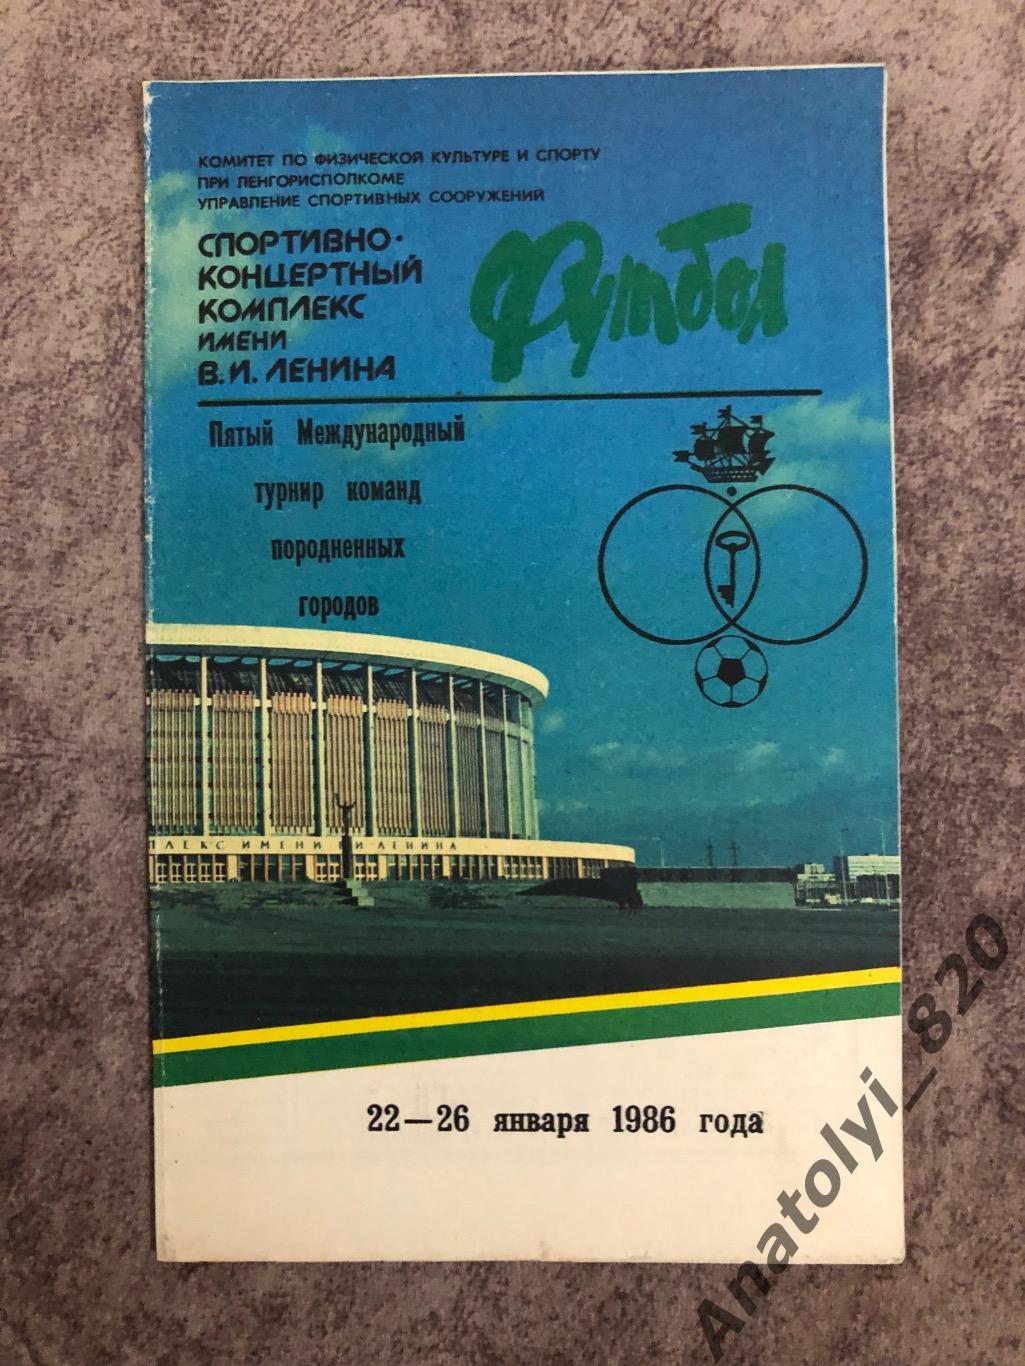 Международный турнир породненных городов, Ленинград 1986 год